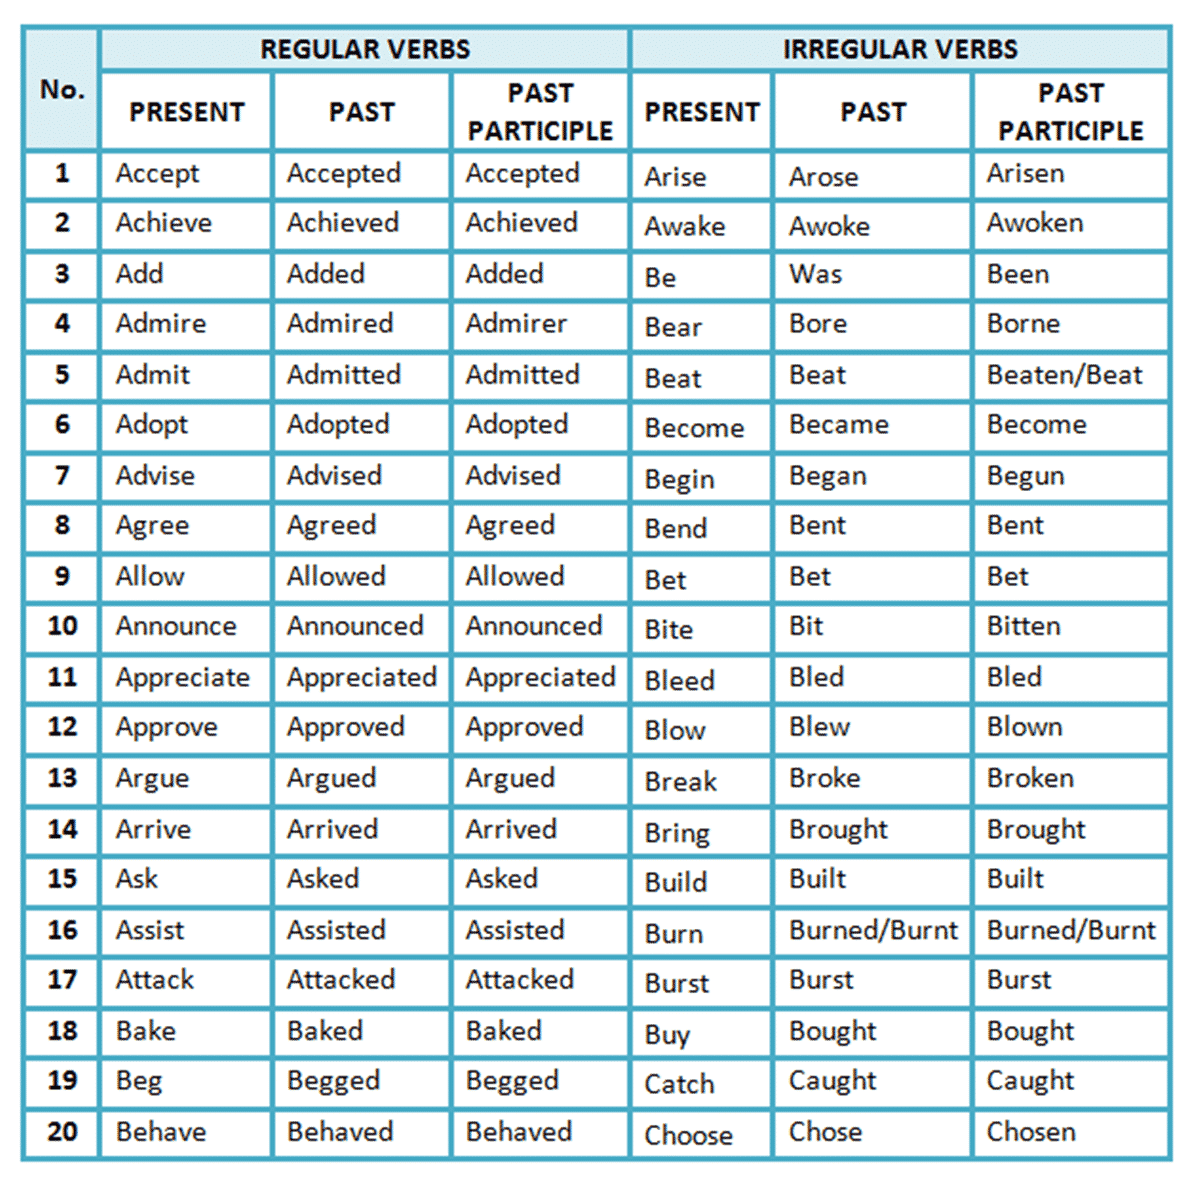 principal-parts-of-verbs-chart